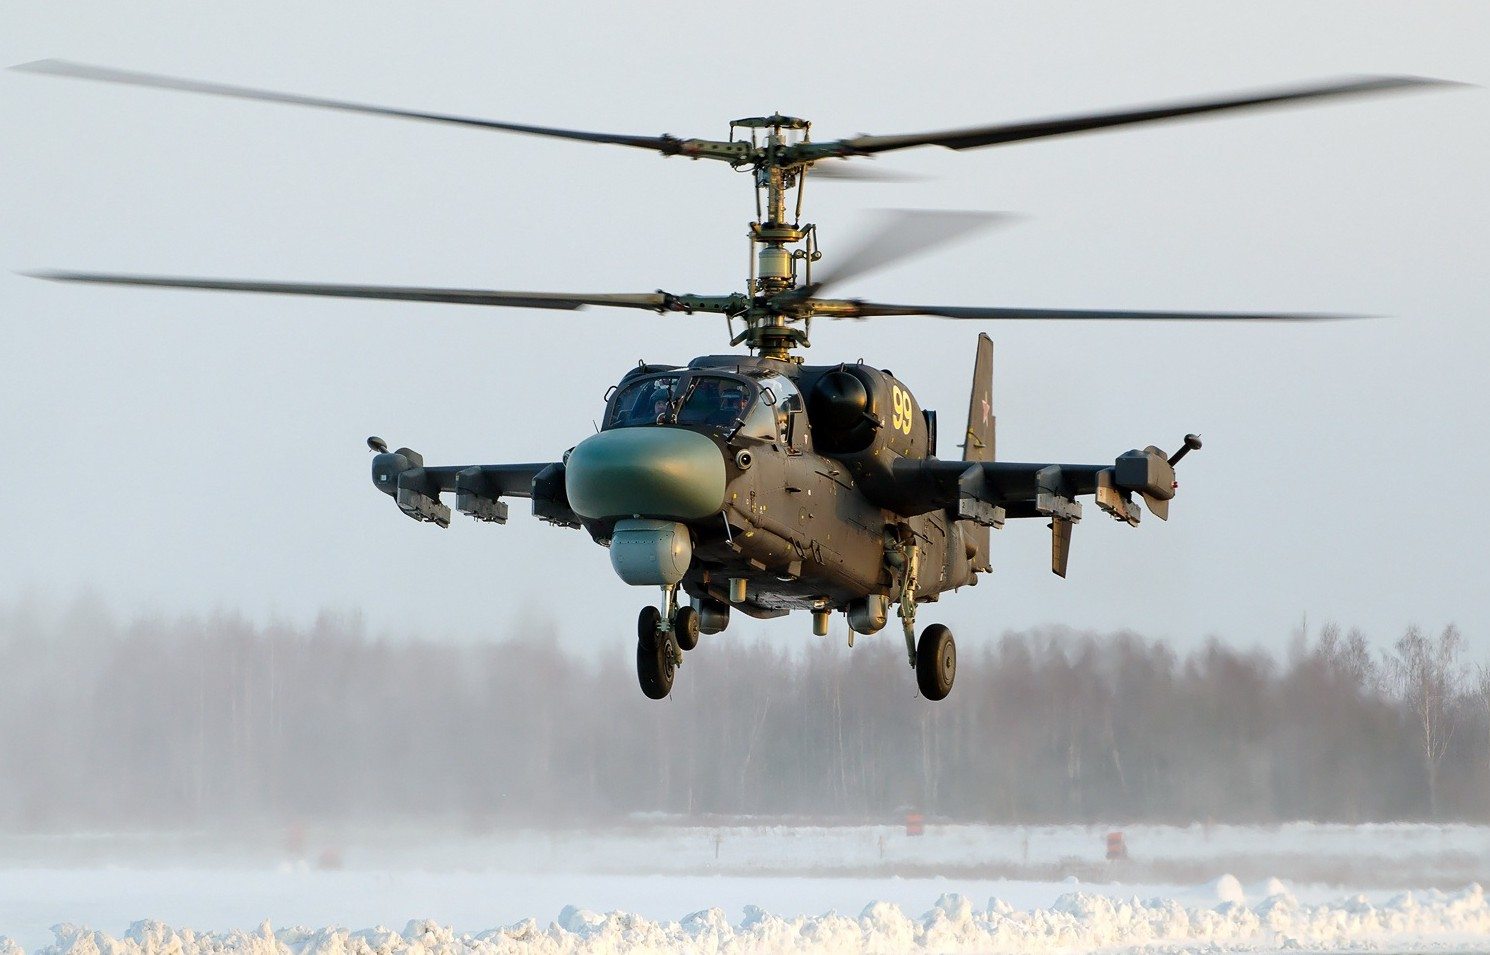 Serial Ka-52 at Torzhok Air Base